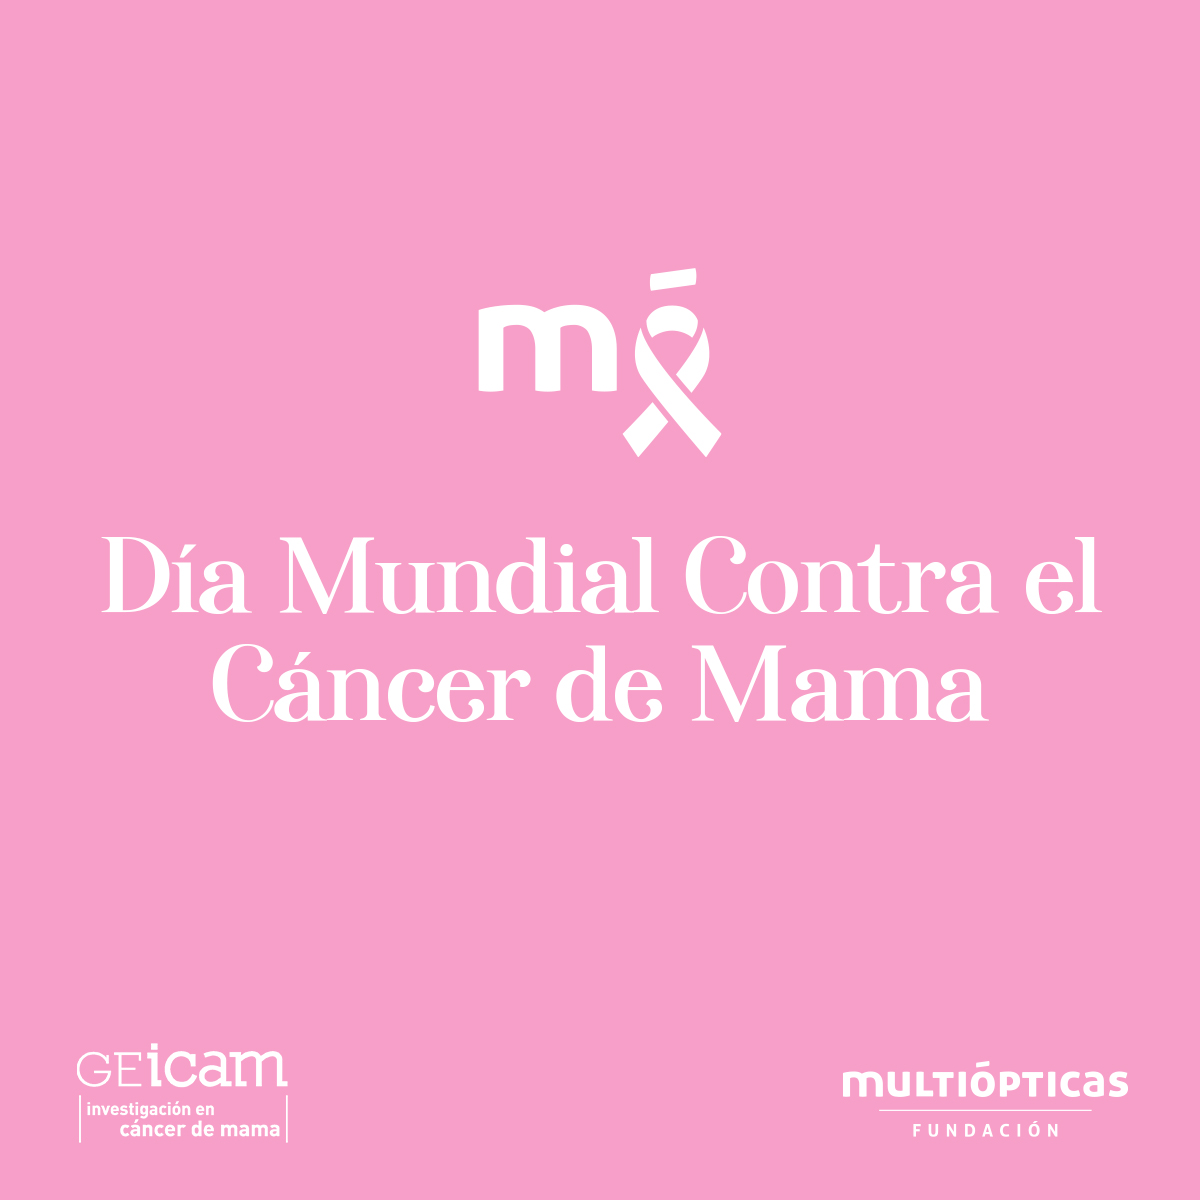 Multiópticas y GEICAM unidos por séptimo año consecutivo para investigar el cáncer de mama